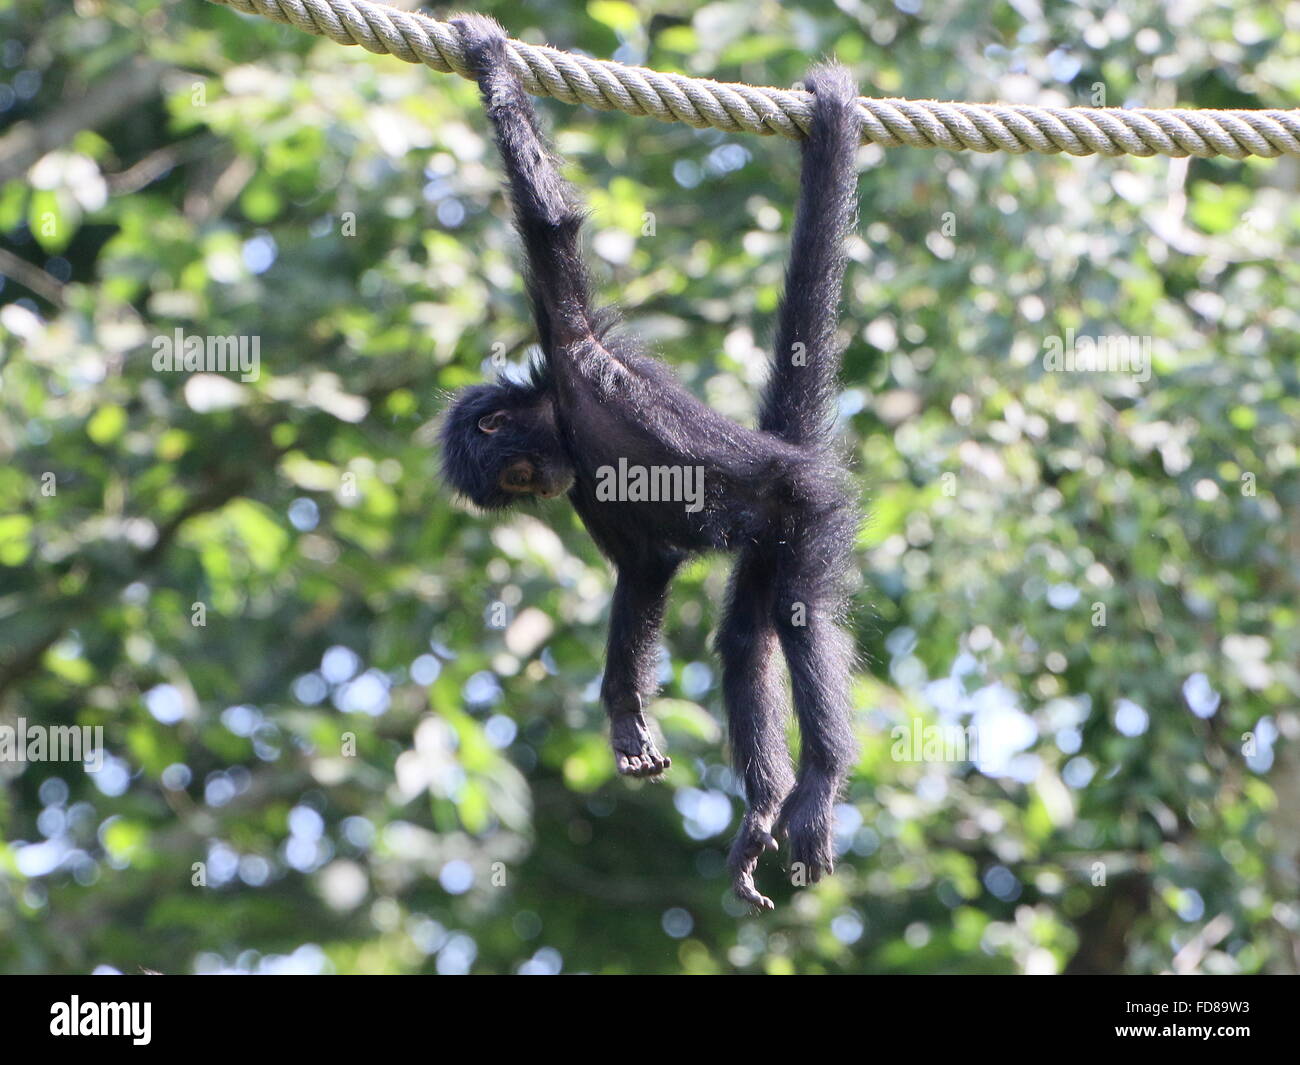 I capretti colombiano a testa nera spider monkey (Ateles fusciceps Robustus) utilizzando la coda prensile, appeso ad una corda in un zoo Foto Stock